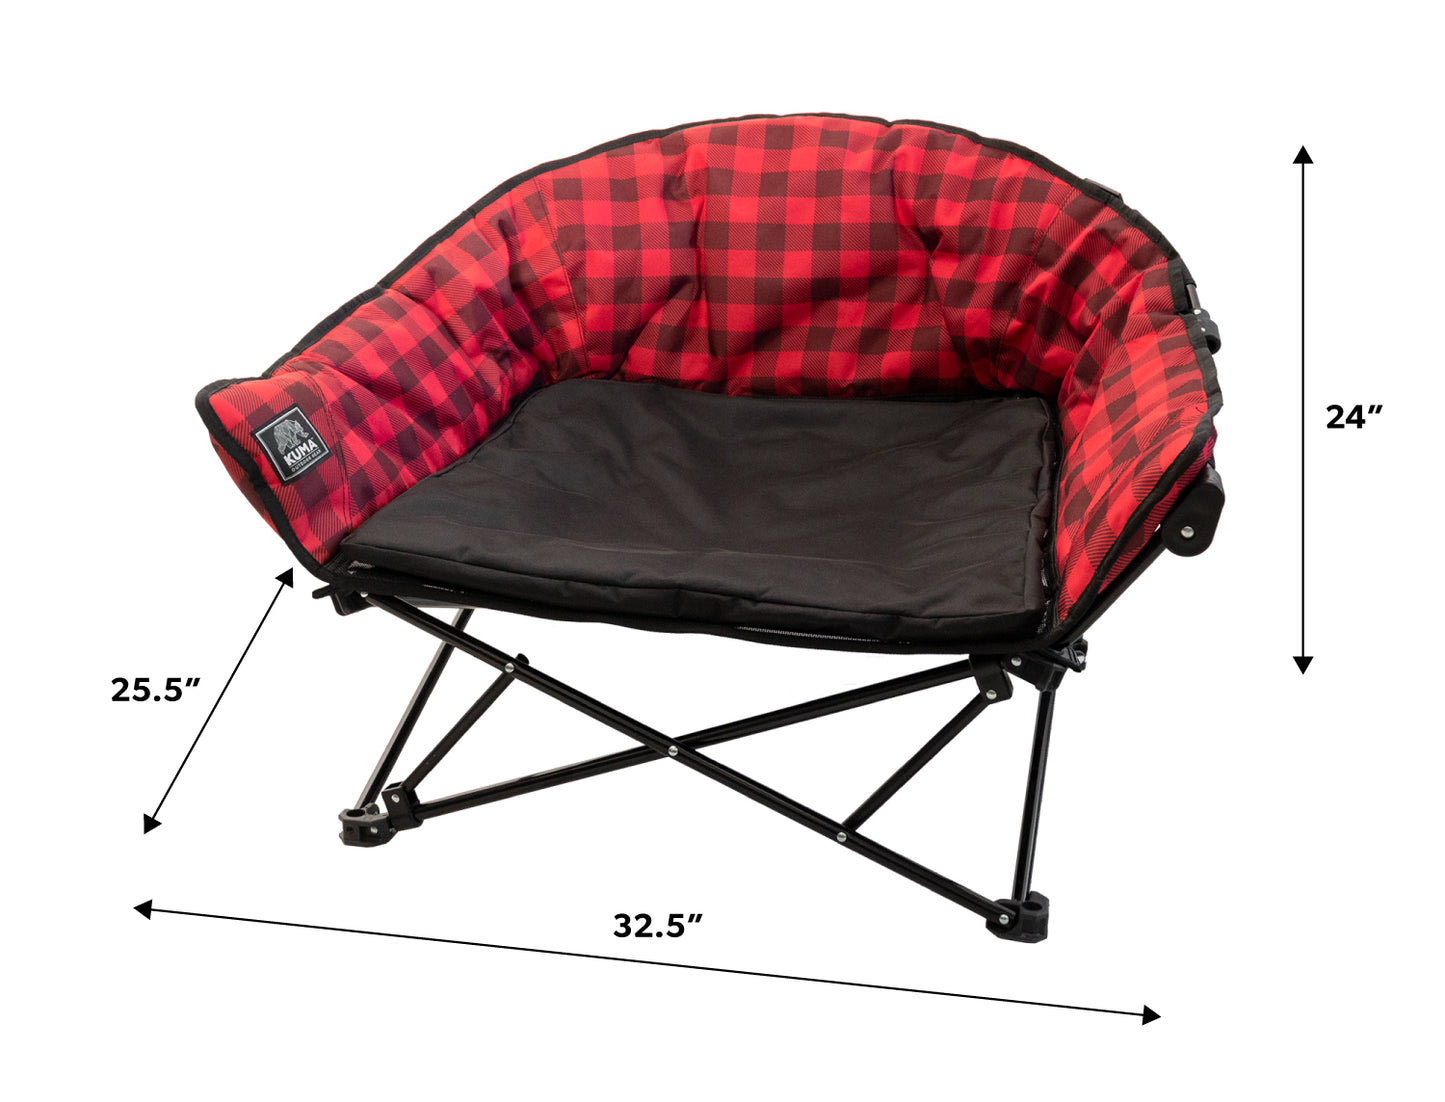 Lazy Bear Dog Bed - by Kuma Outdoor Gear